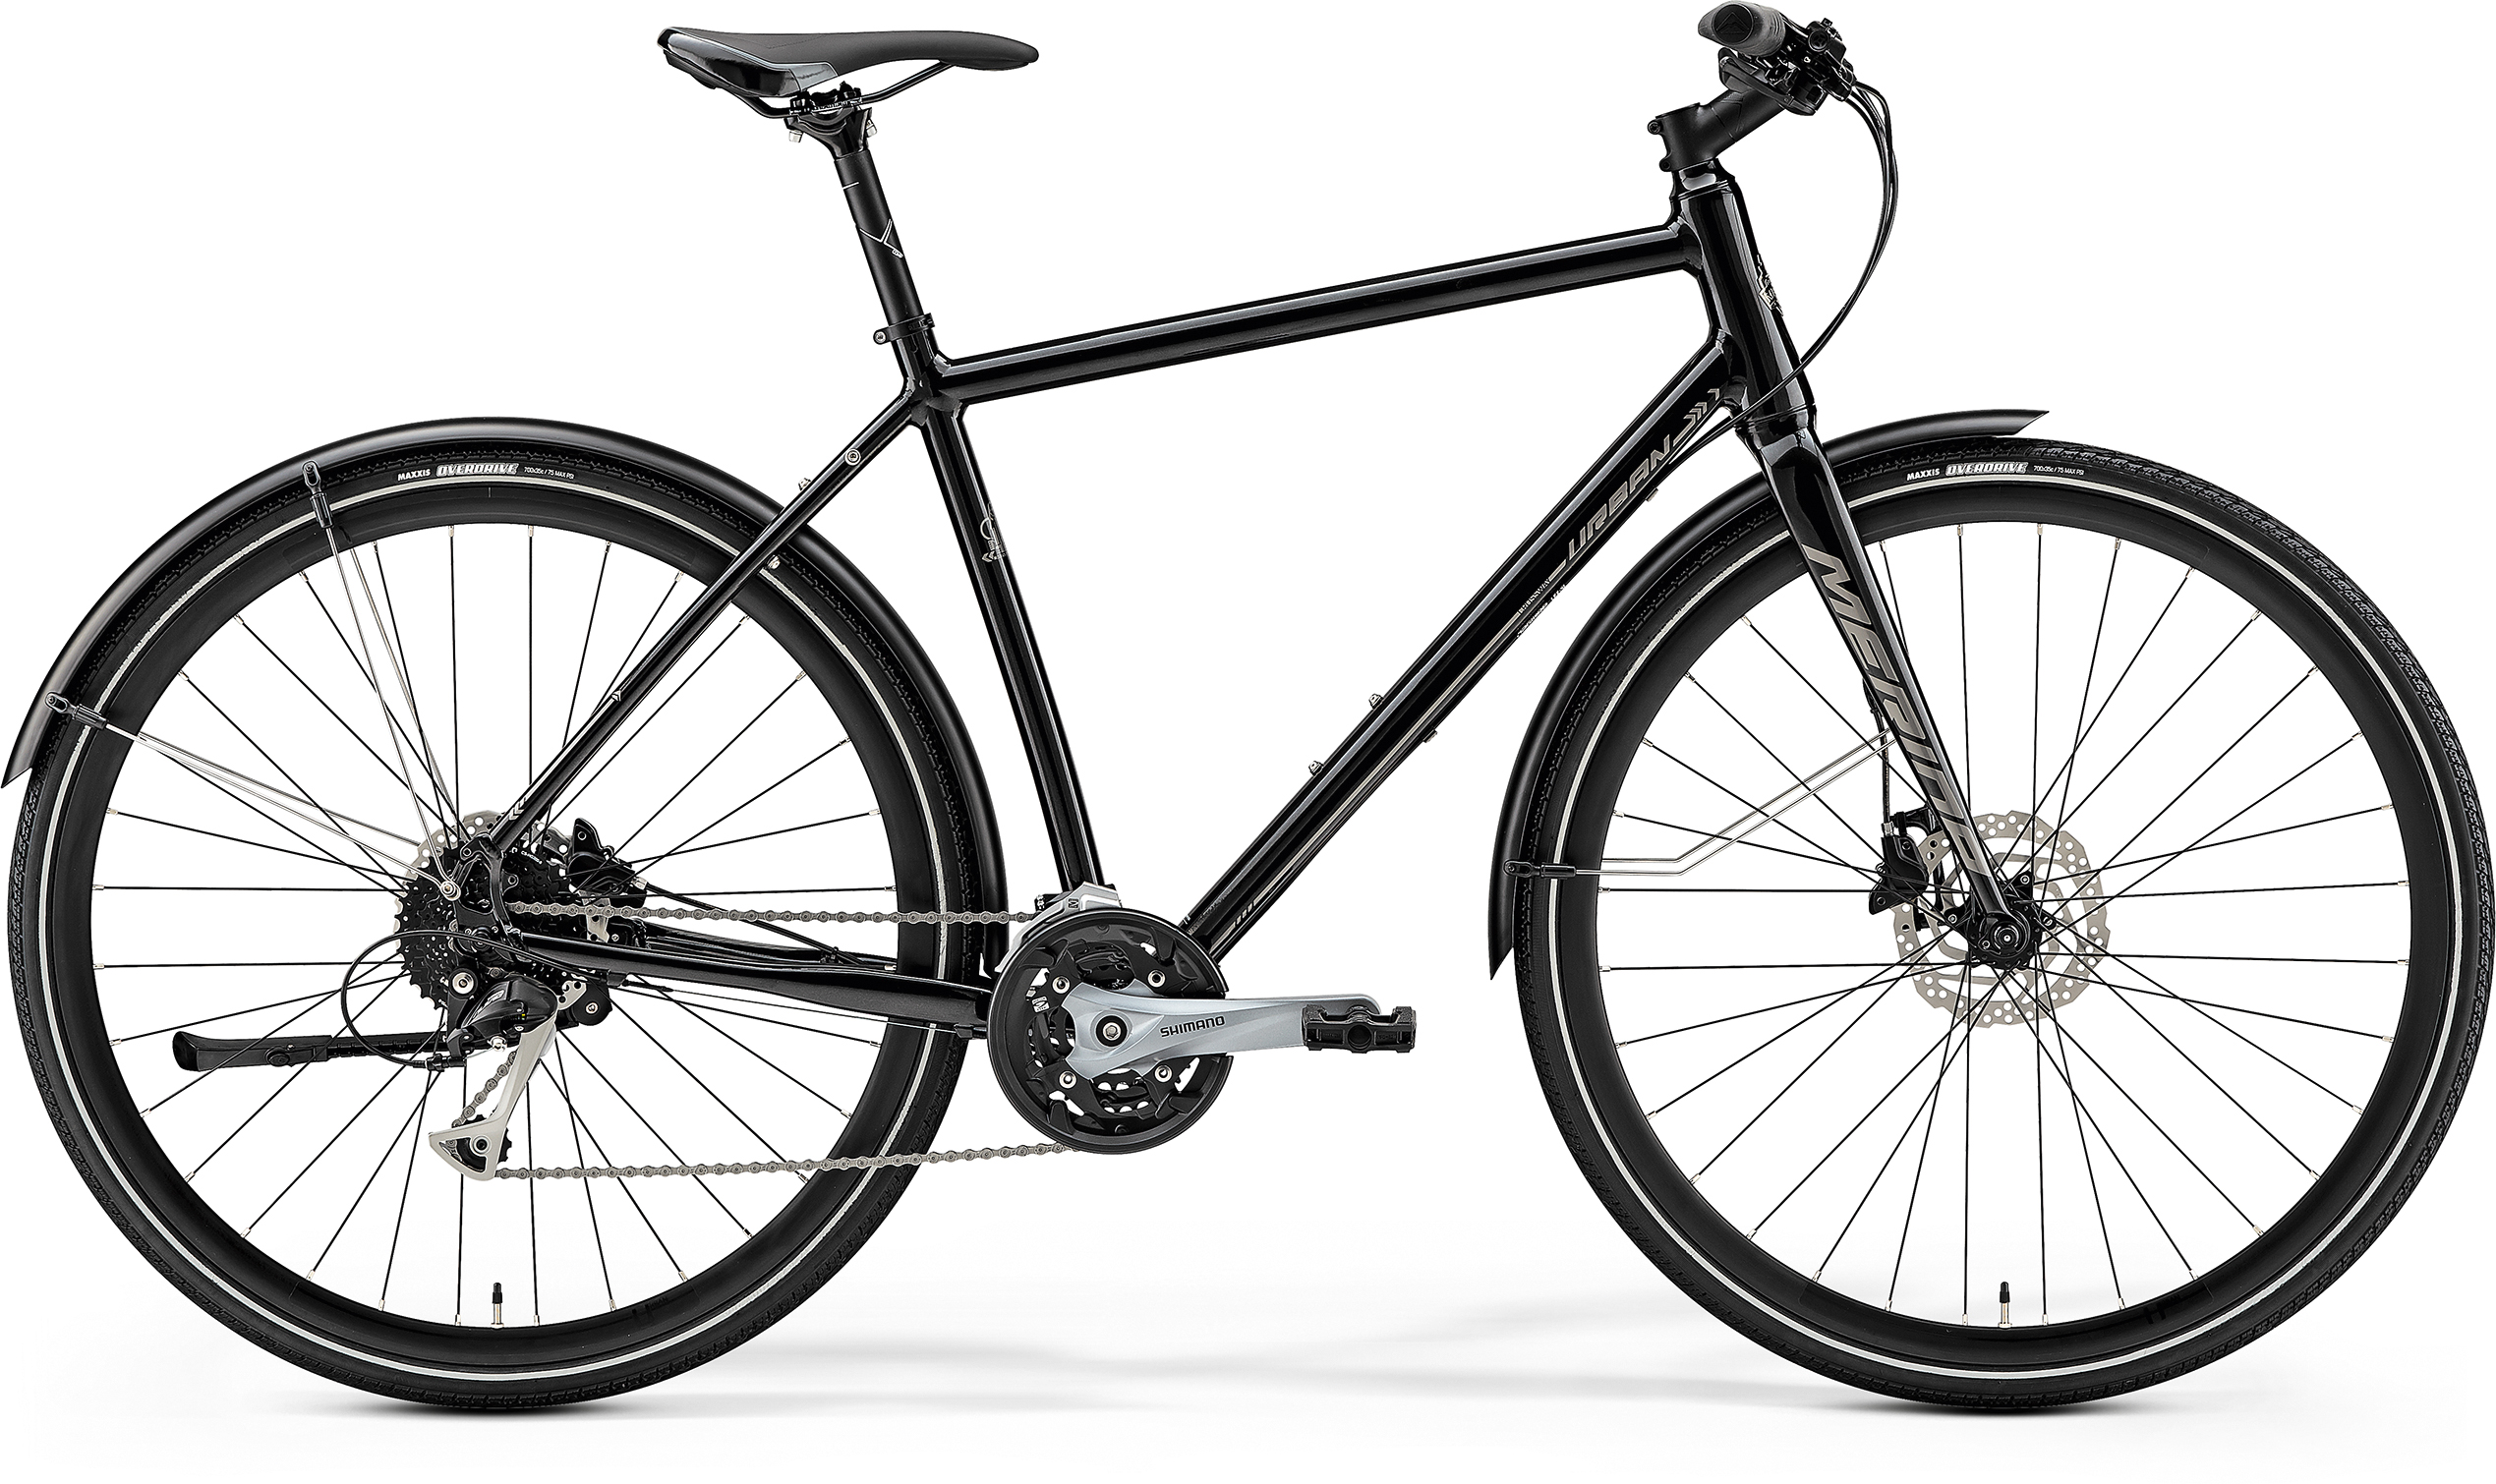  Отзывы о Городском велосипеде Merida Crossway Urban 100 2019